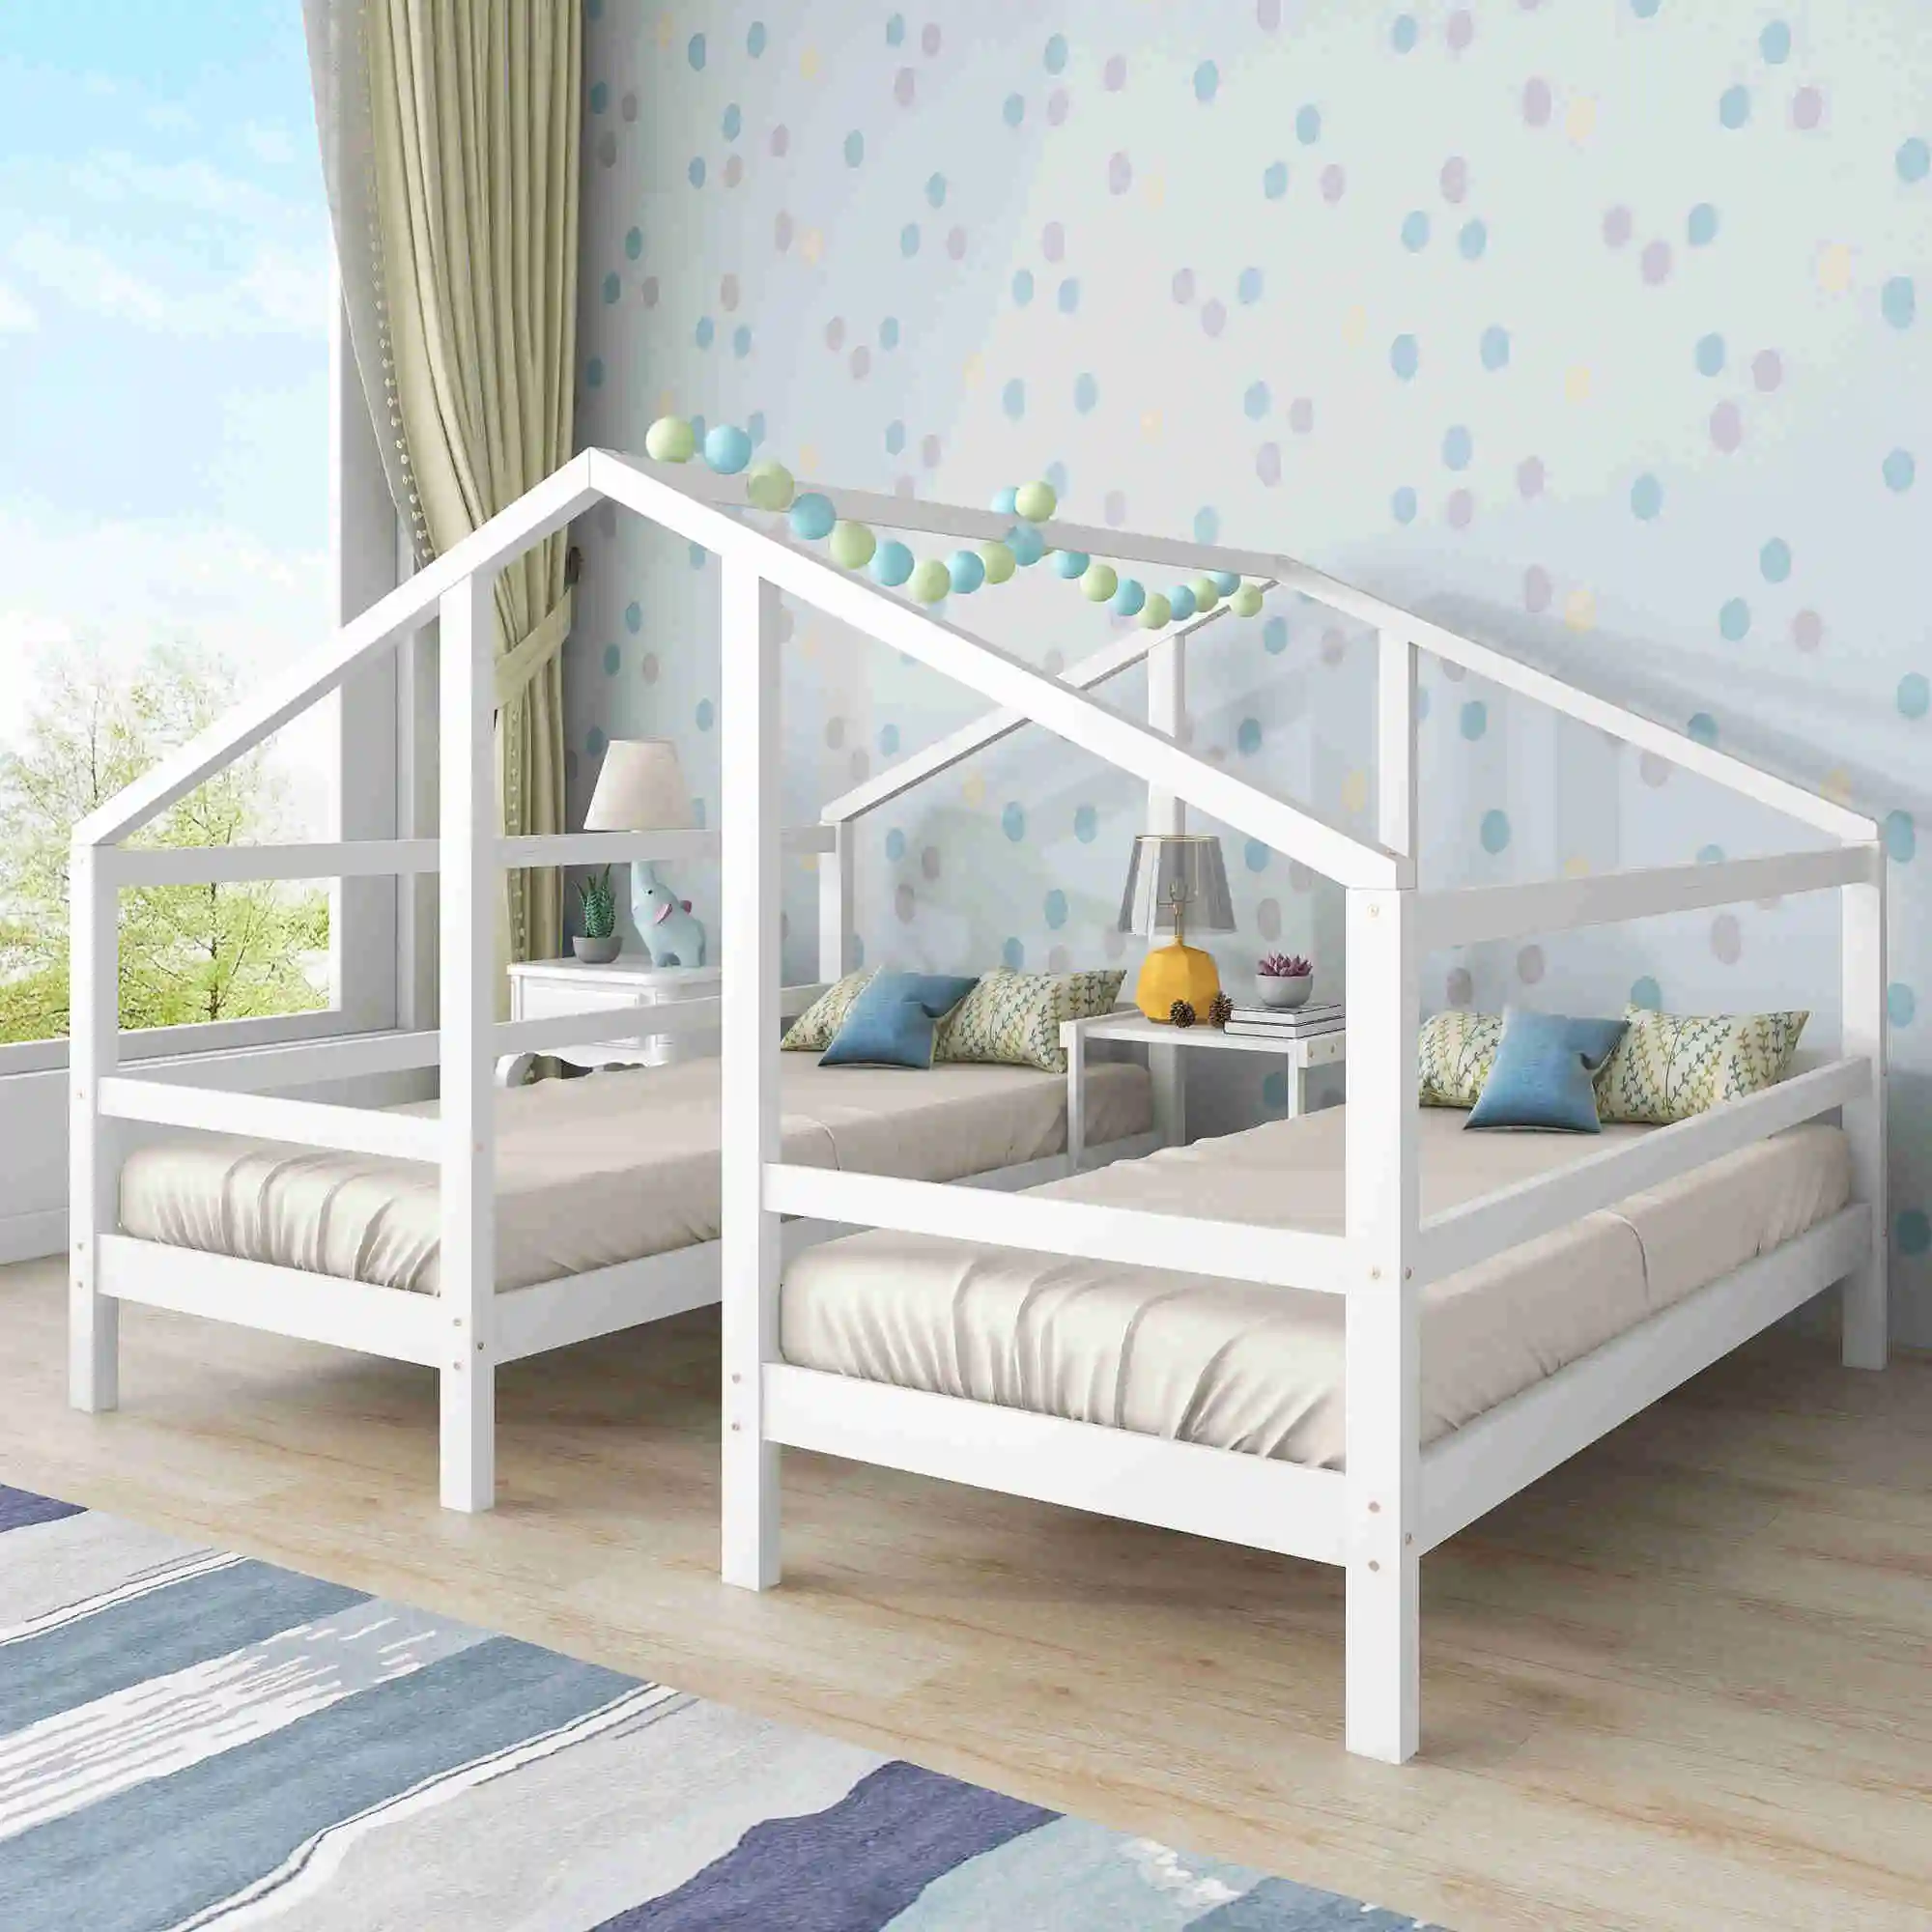 Cama alta madera maciza pino 90x200 cm cama juvenil dormitorio juvenil cama  de madera estilo litera mueble moderno para dormitorio accesorio de hogar -  AliExpress